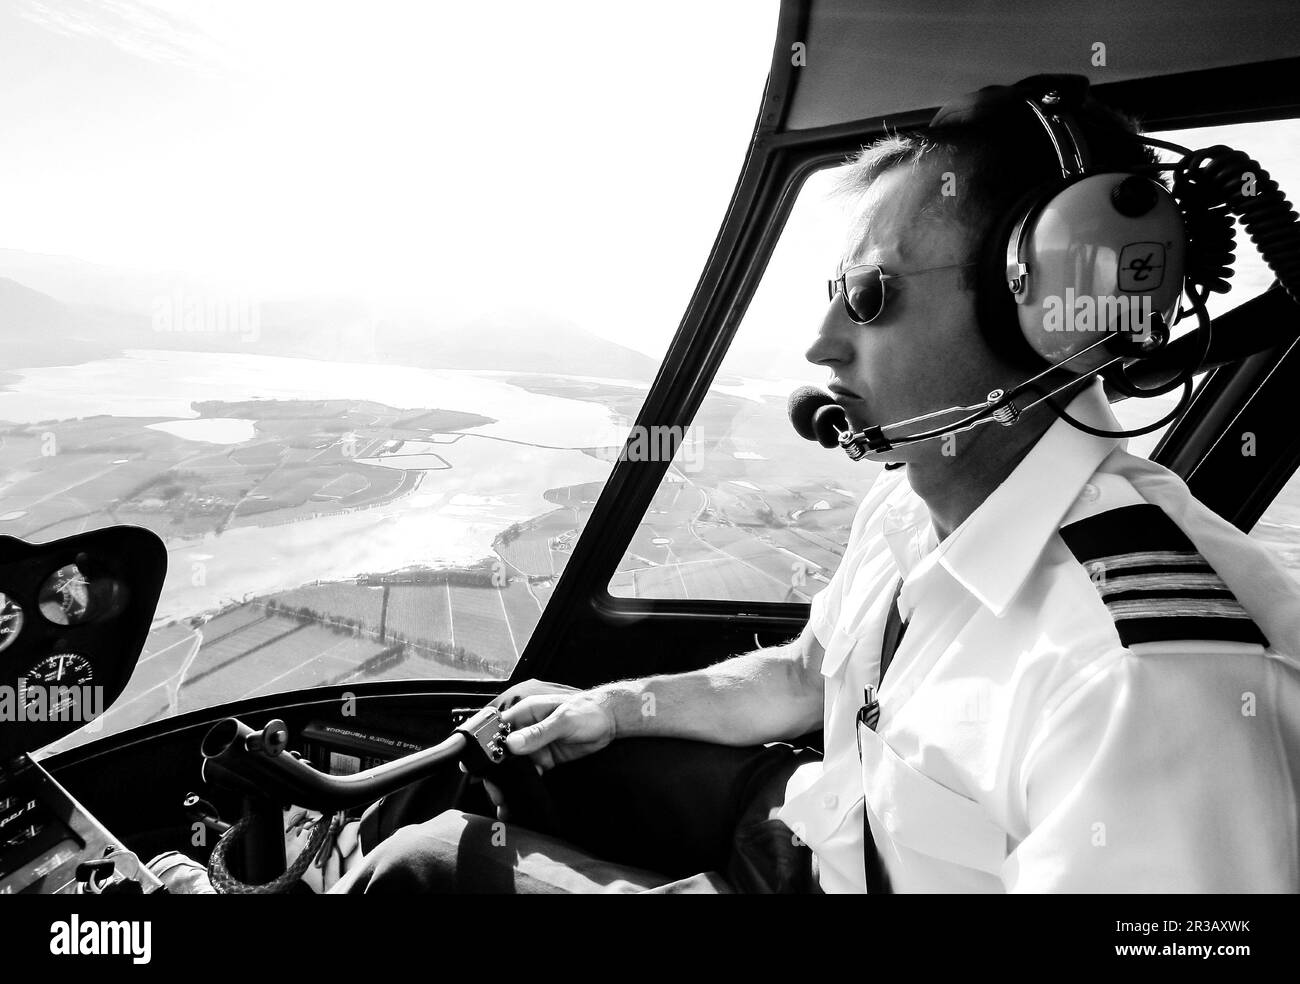 Männlicher, weißer Hubschrauberpilot, der einen Hubschrauber vom Typ R44 über dem Land fliegt Stockfoto